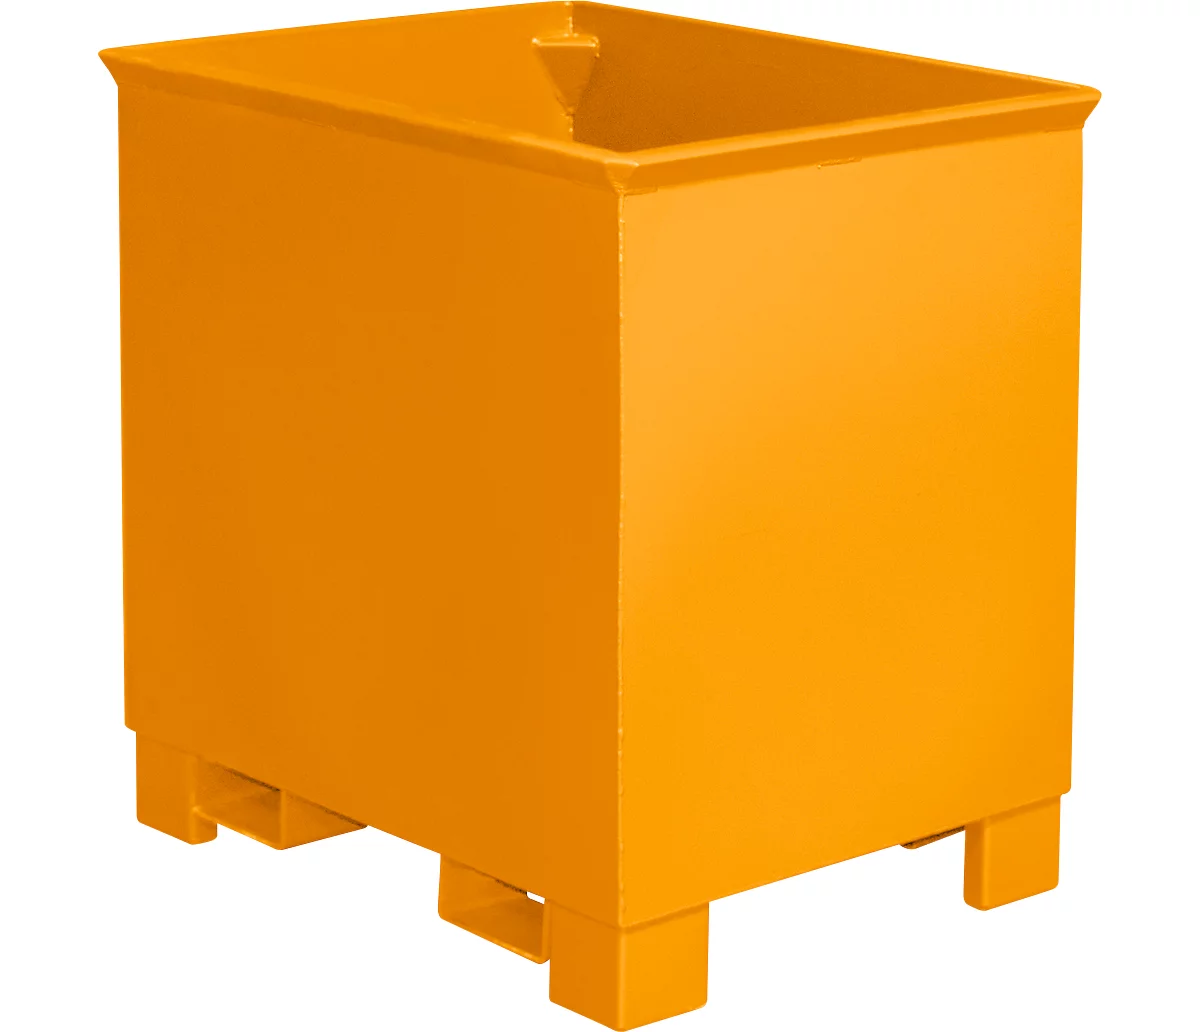 Contenedor para trenes logísticos tipo C 30, para sólidos, apilable hasta 3 unidades, capacidad 0,3 m³, hasta 500 kg, amarillo anaranjado RAL 2000